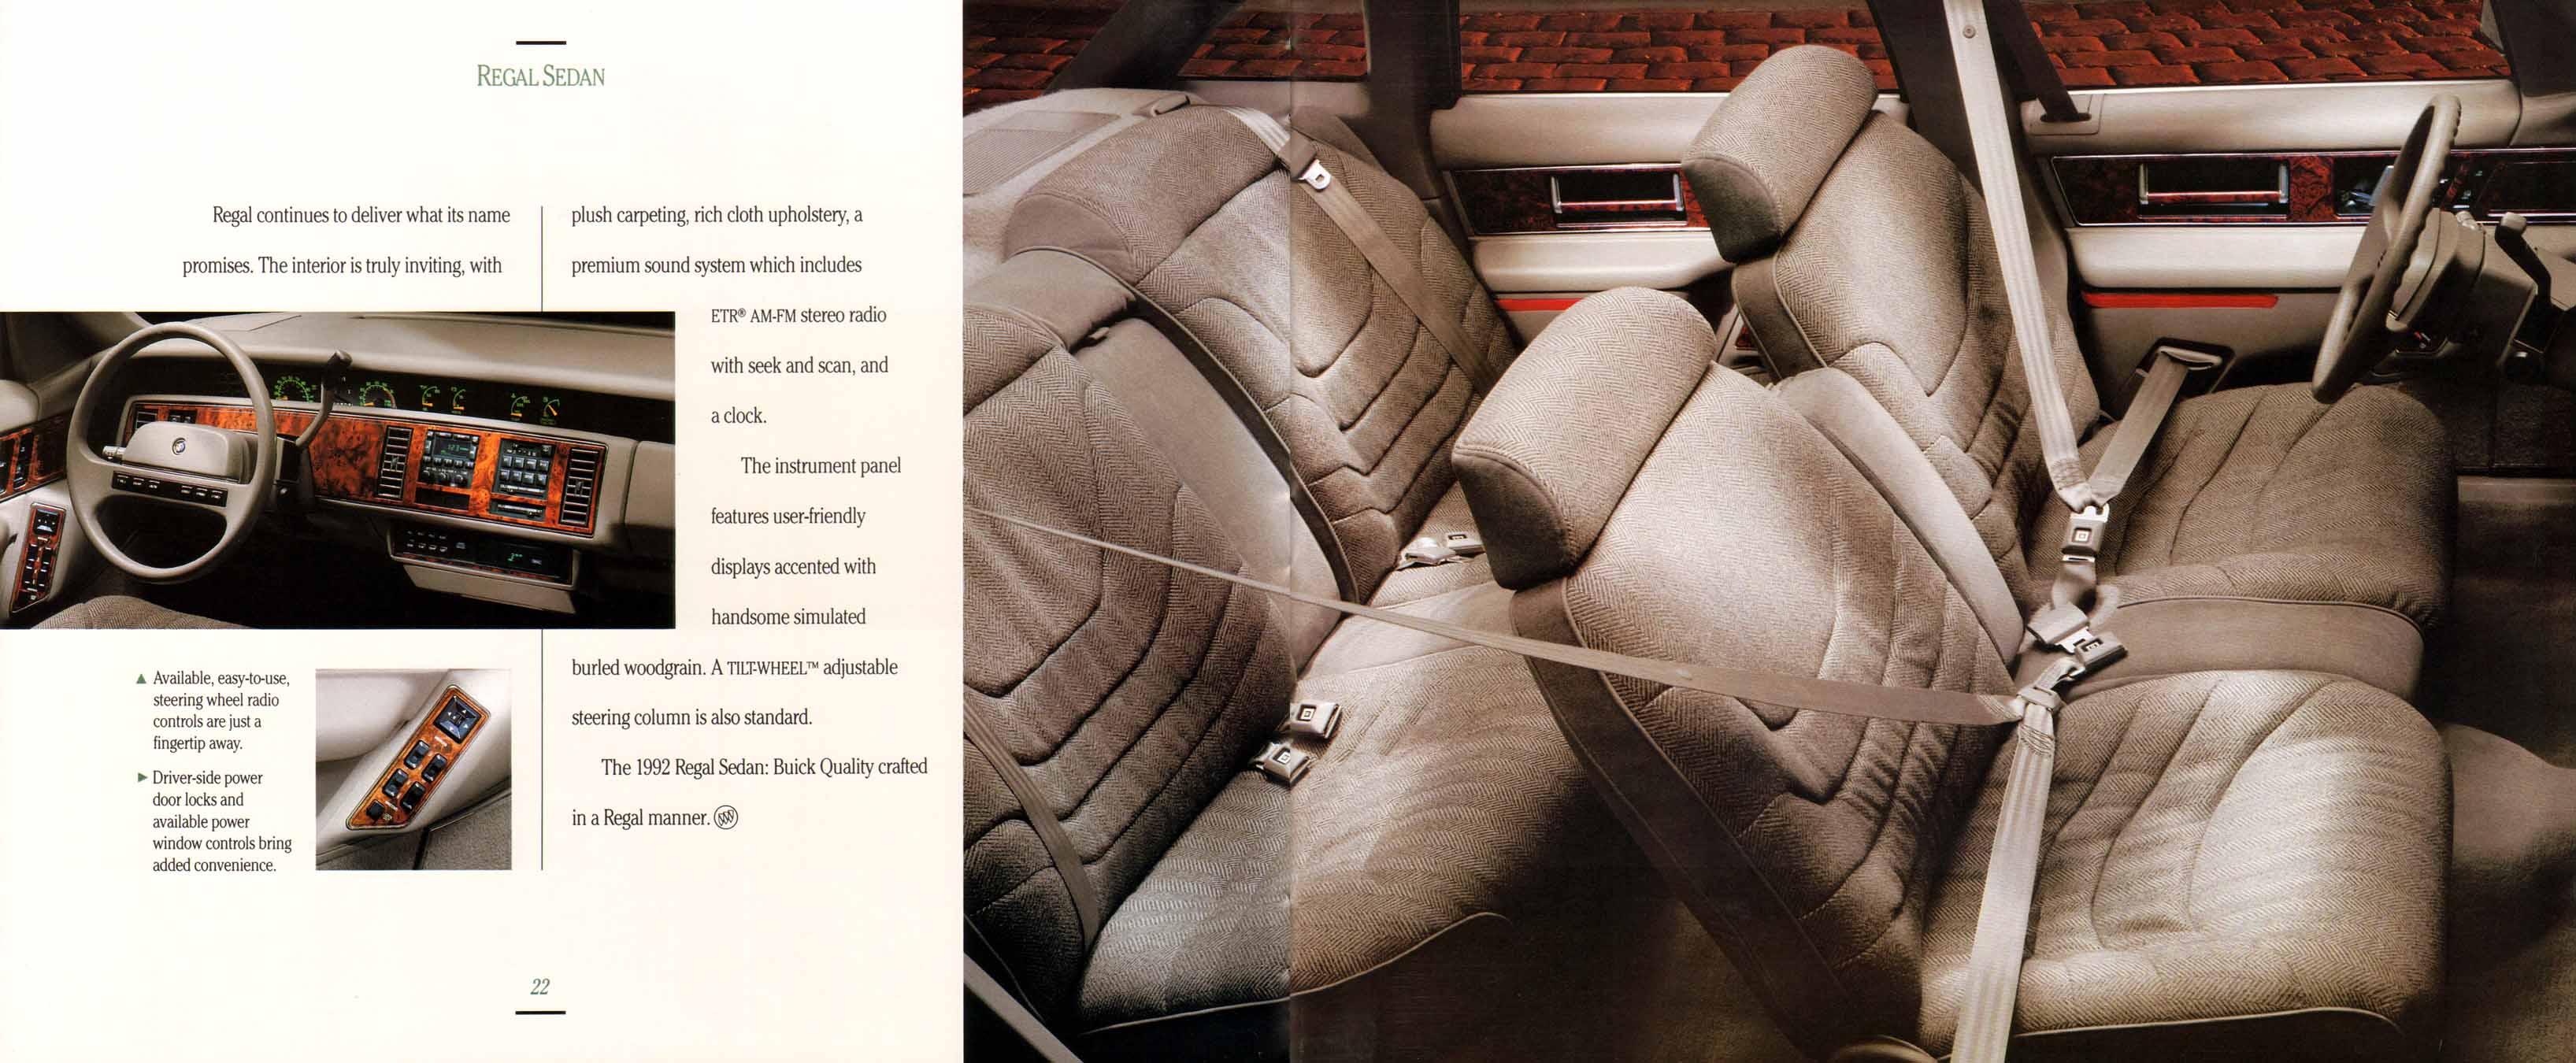 1992 Buick Full Line Prestige-22-23